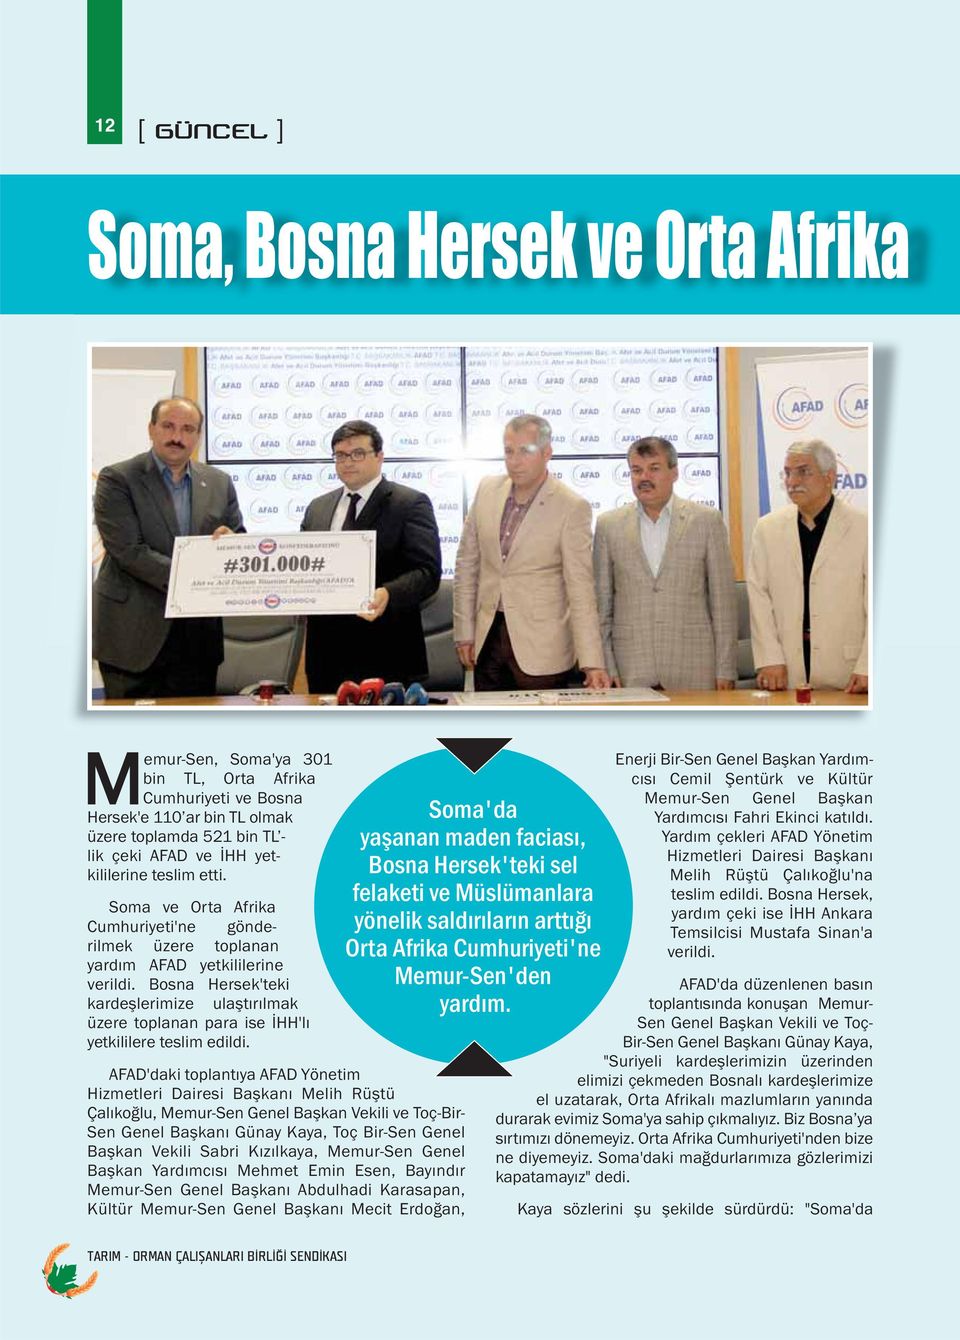 Bosna Hersek'teki kardeşlerimize ulaştırılmak üzere toplanan para ise İHH'lı yetkililere teslim edildi.